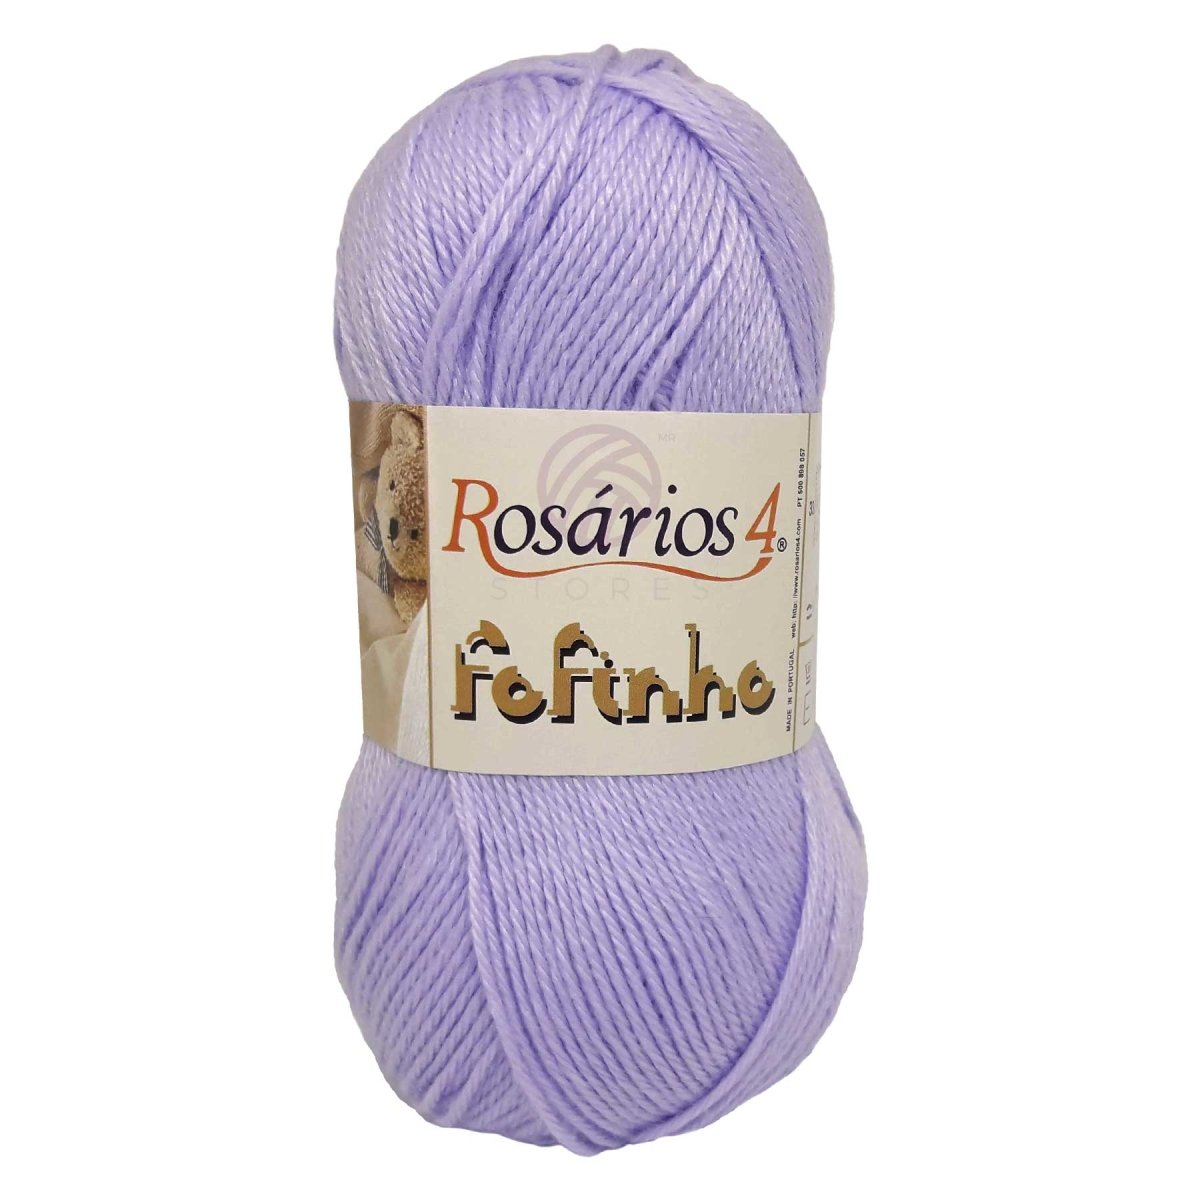 FOFINHO - Crochetstores441-175606850441175